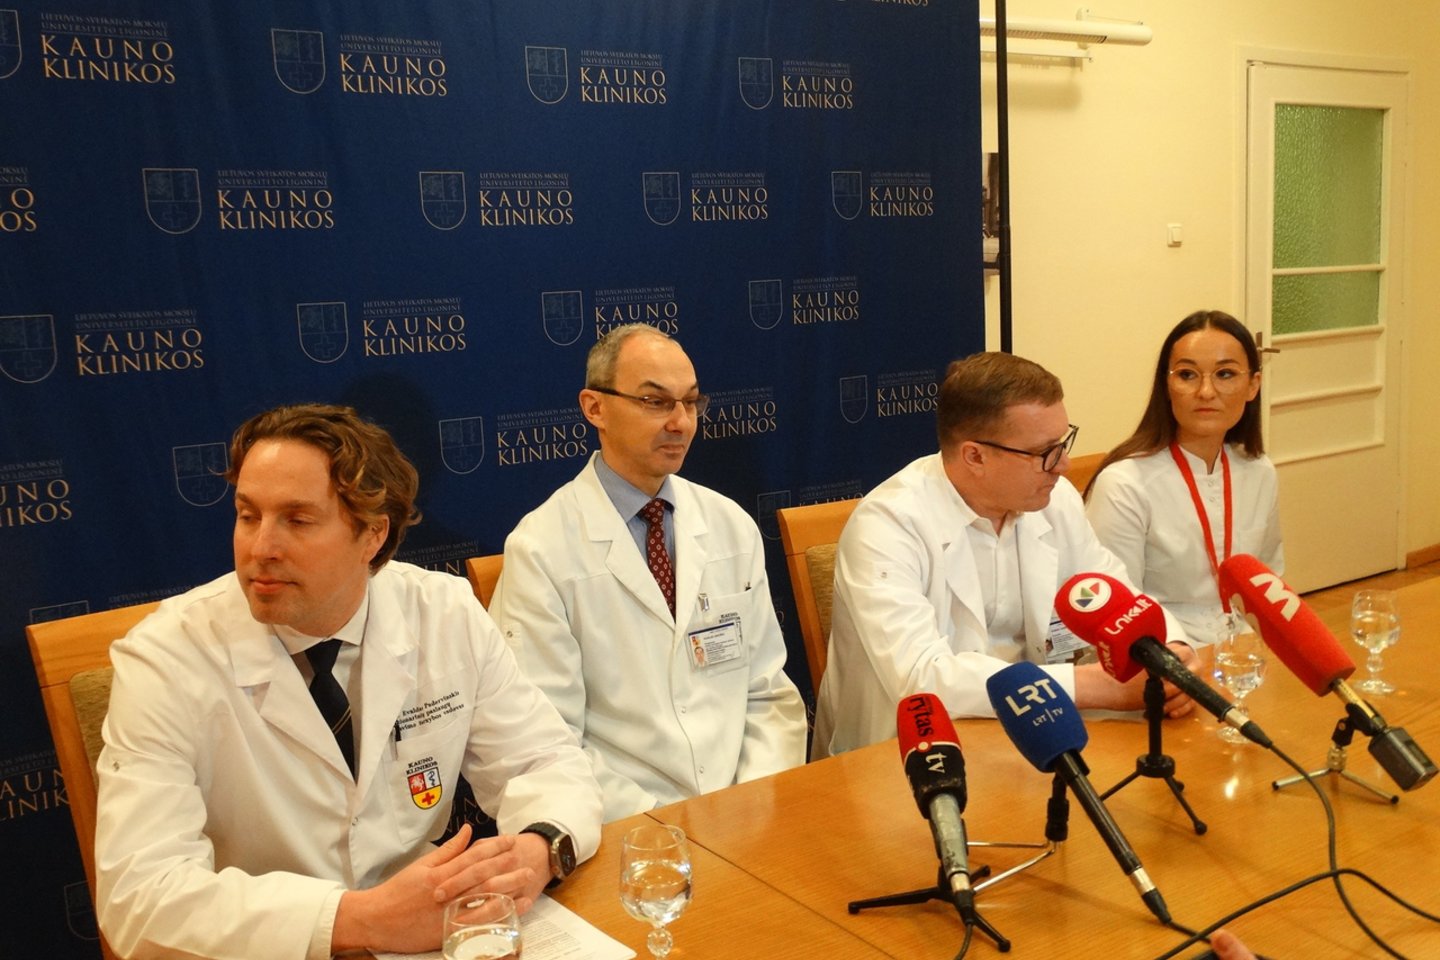  Kauno klinikų medikai pasakojo apie transplantacijų pasiekimus praėjusiais metais. <br> A.Karaliūno nuotr.